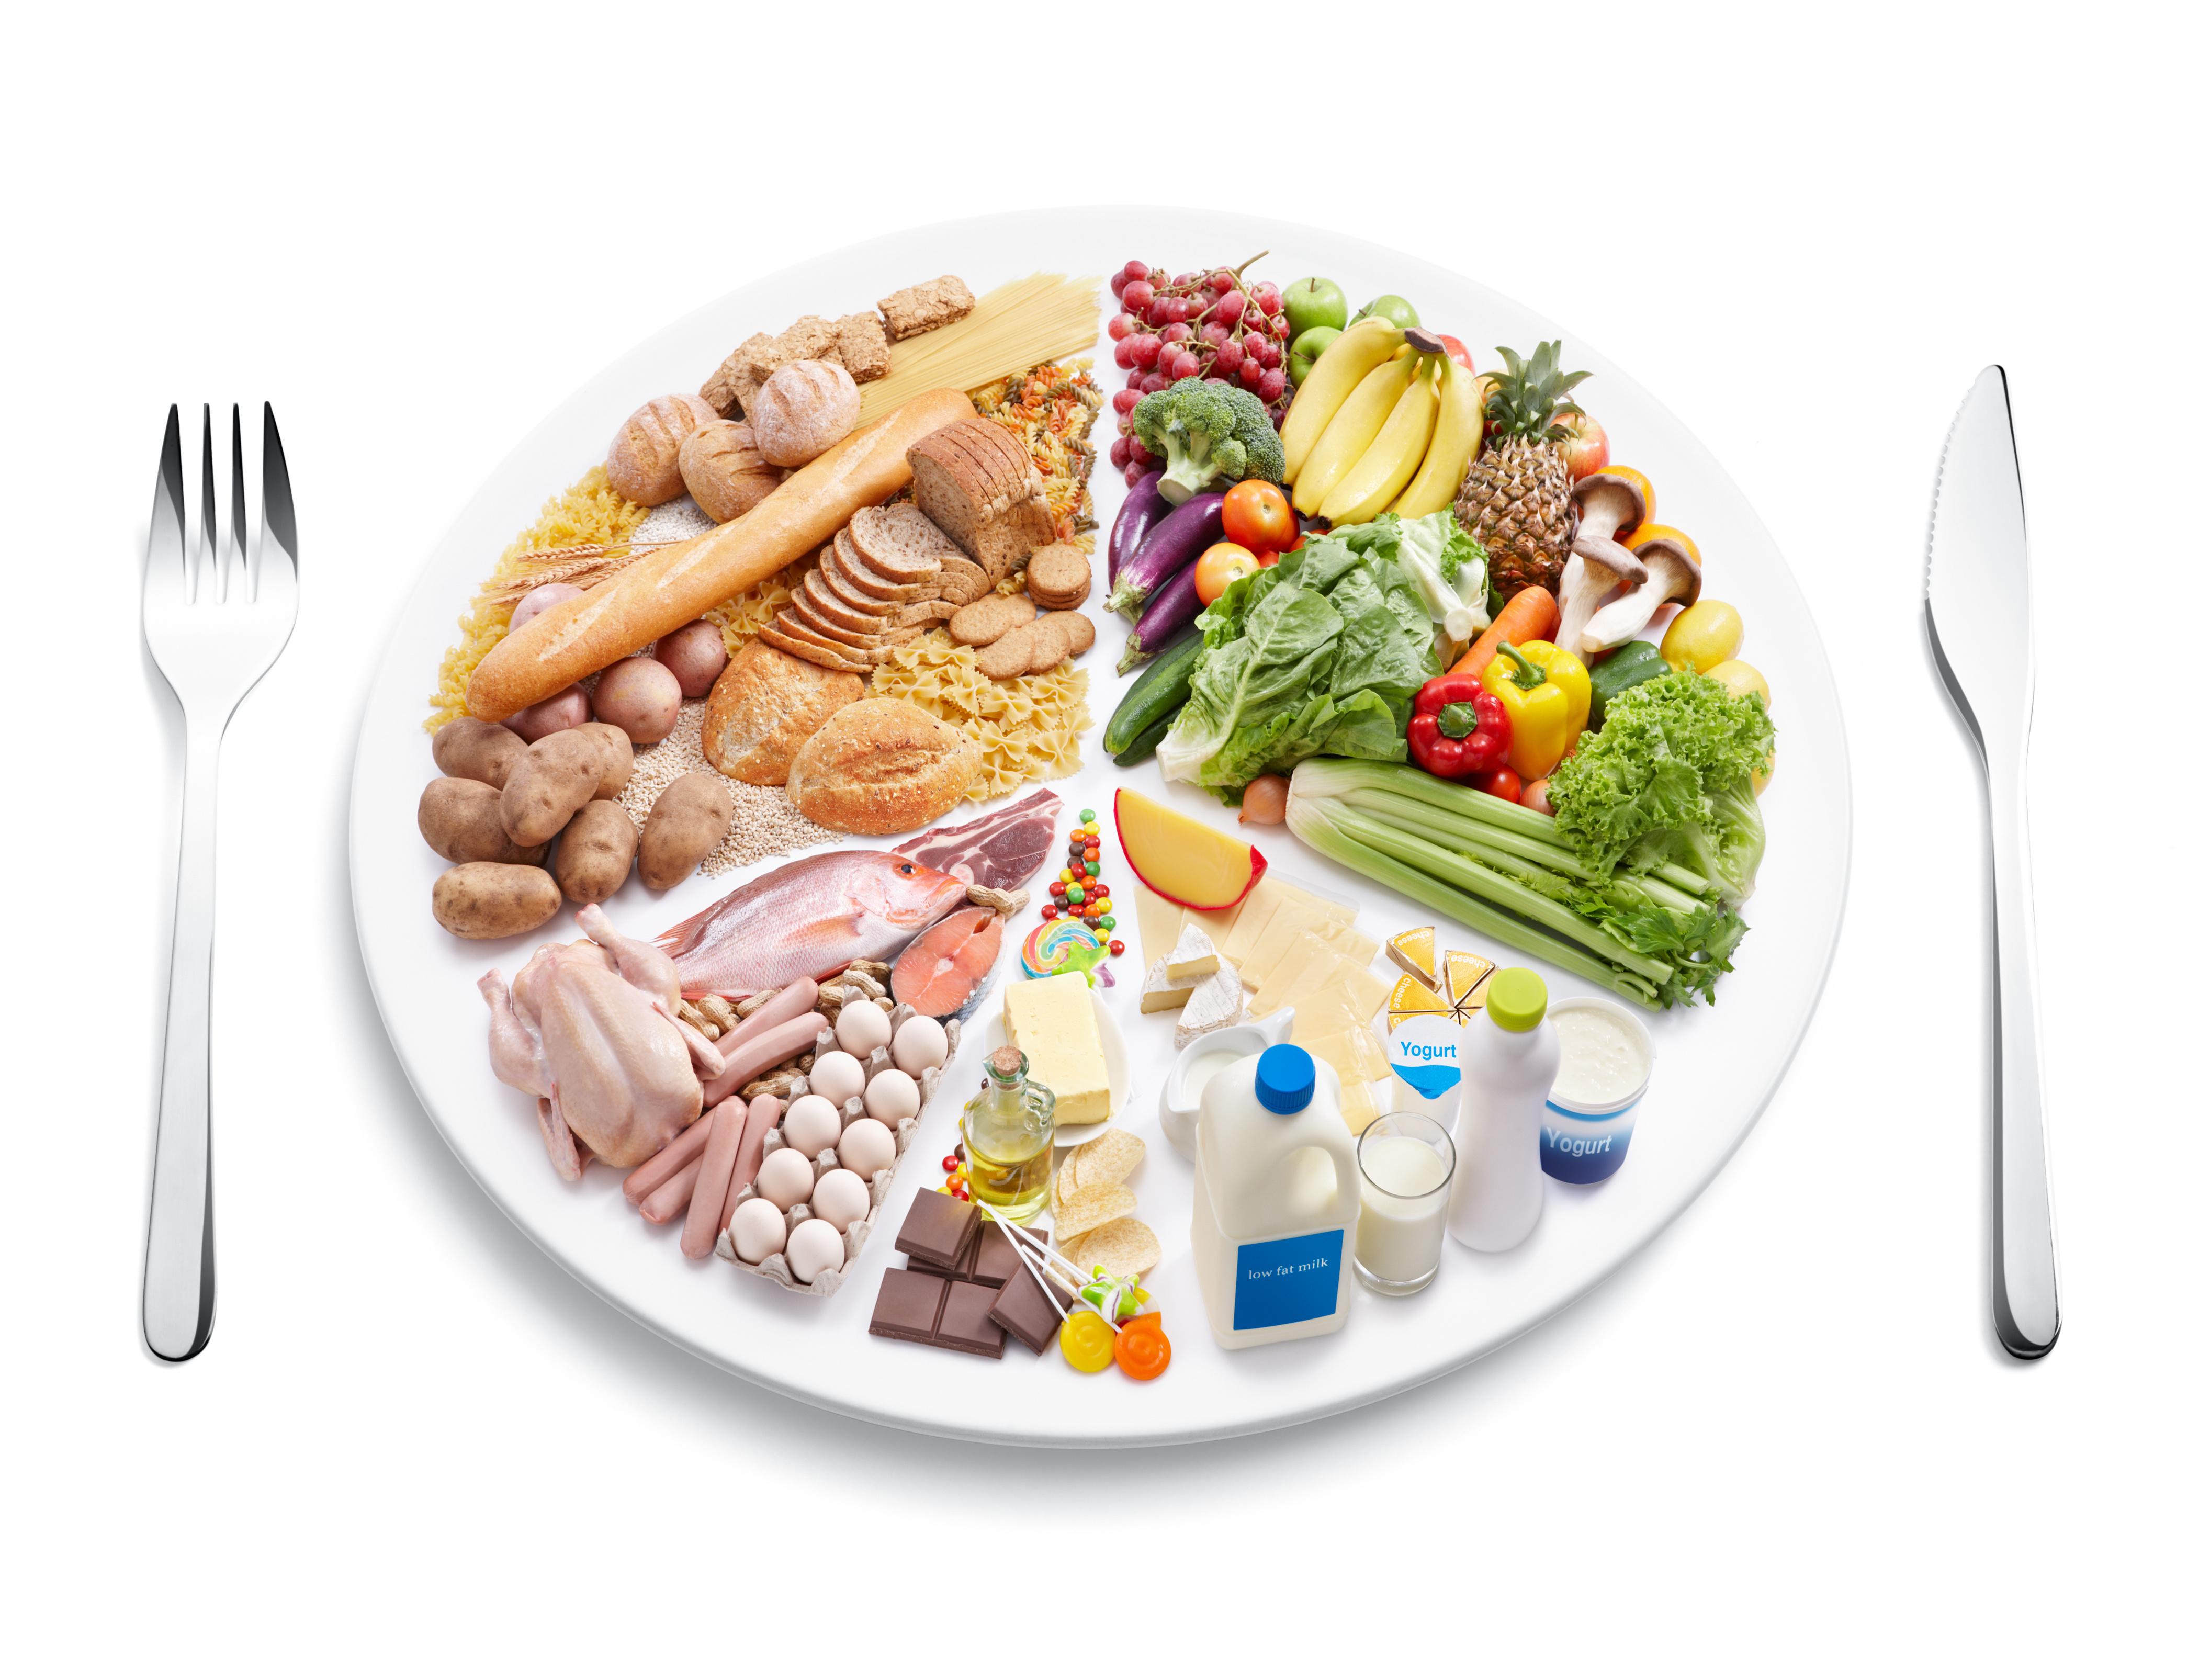 Rost A Vastagbél Tisztításához - 10 Rostban Gazdag étel | Táplálkozás és étrend 